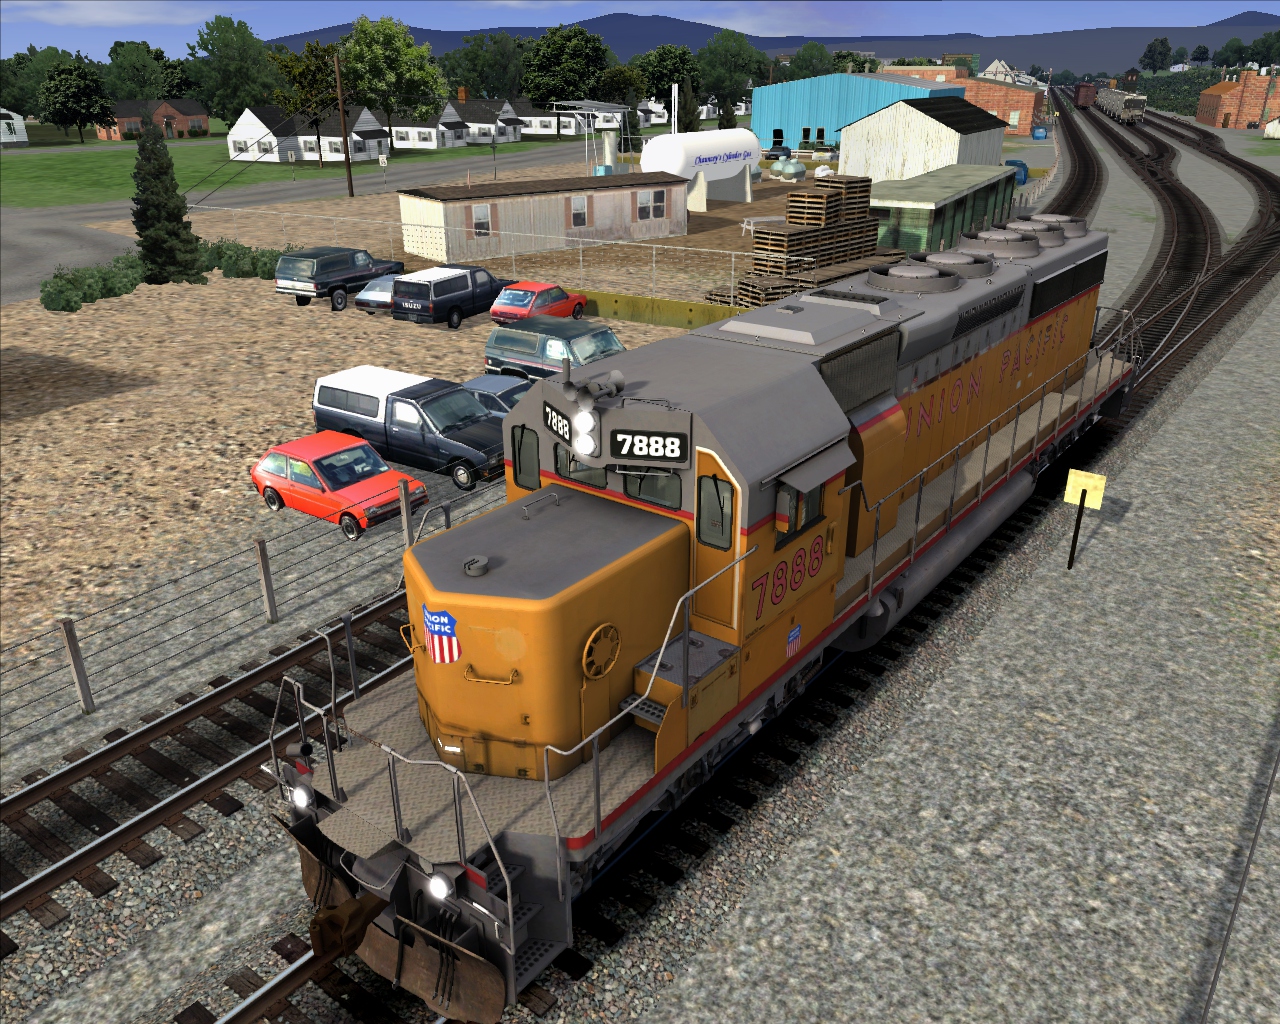 Игры ездить на поезде. Симулятор поезда Train Simulator. Railworks 3 - Train Simulator 2012 Deluxe. Microsoft Train Simulator 2. Railworks 3 Train Simulator 2012.